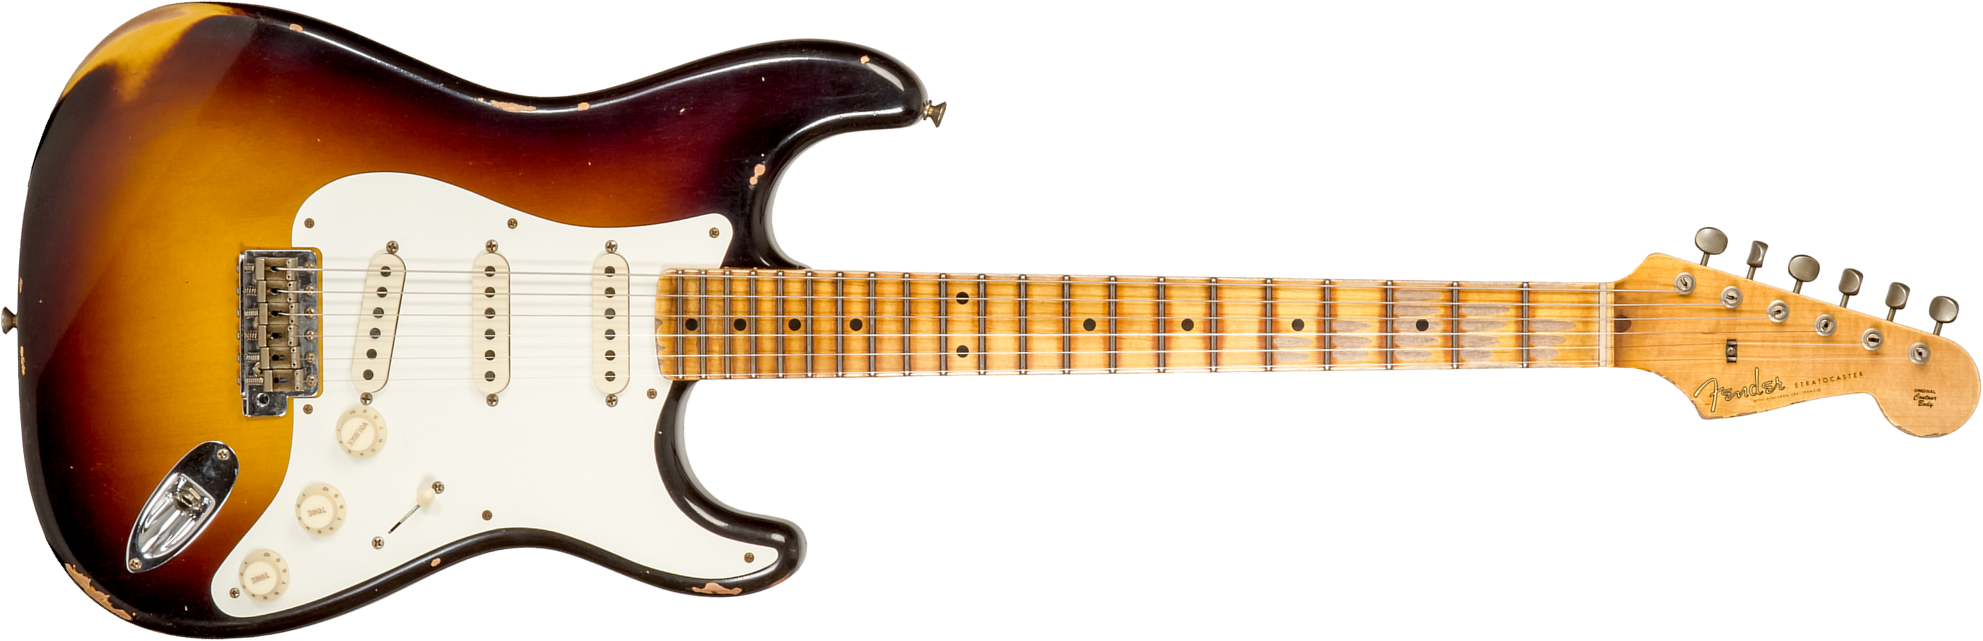 Fender Custom Shop Strat 1957 3s Trem Mn #cz575421 - Relic 2-color Sunburst - Guitarra eléctrica con forma de str. - Main picture